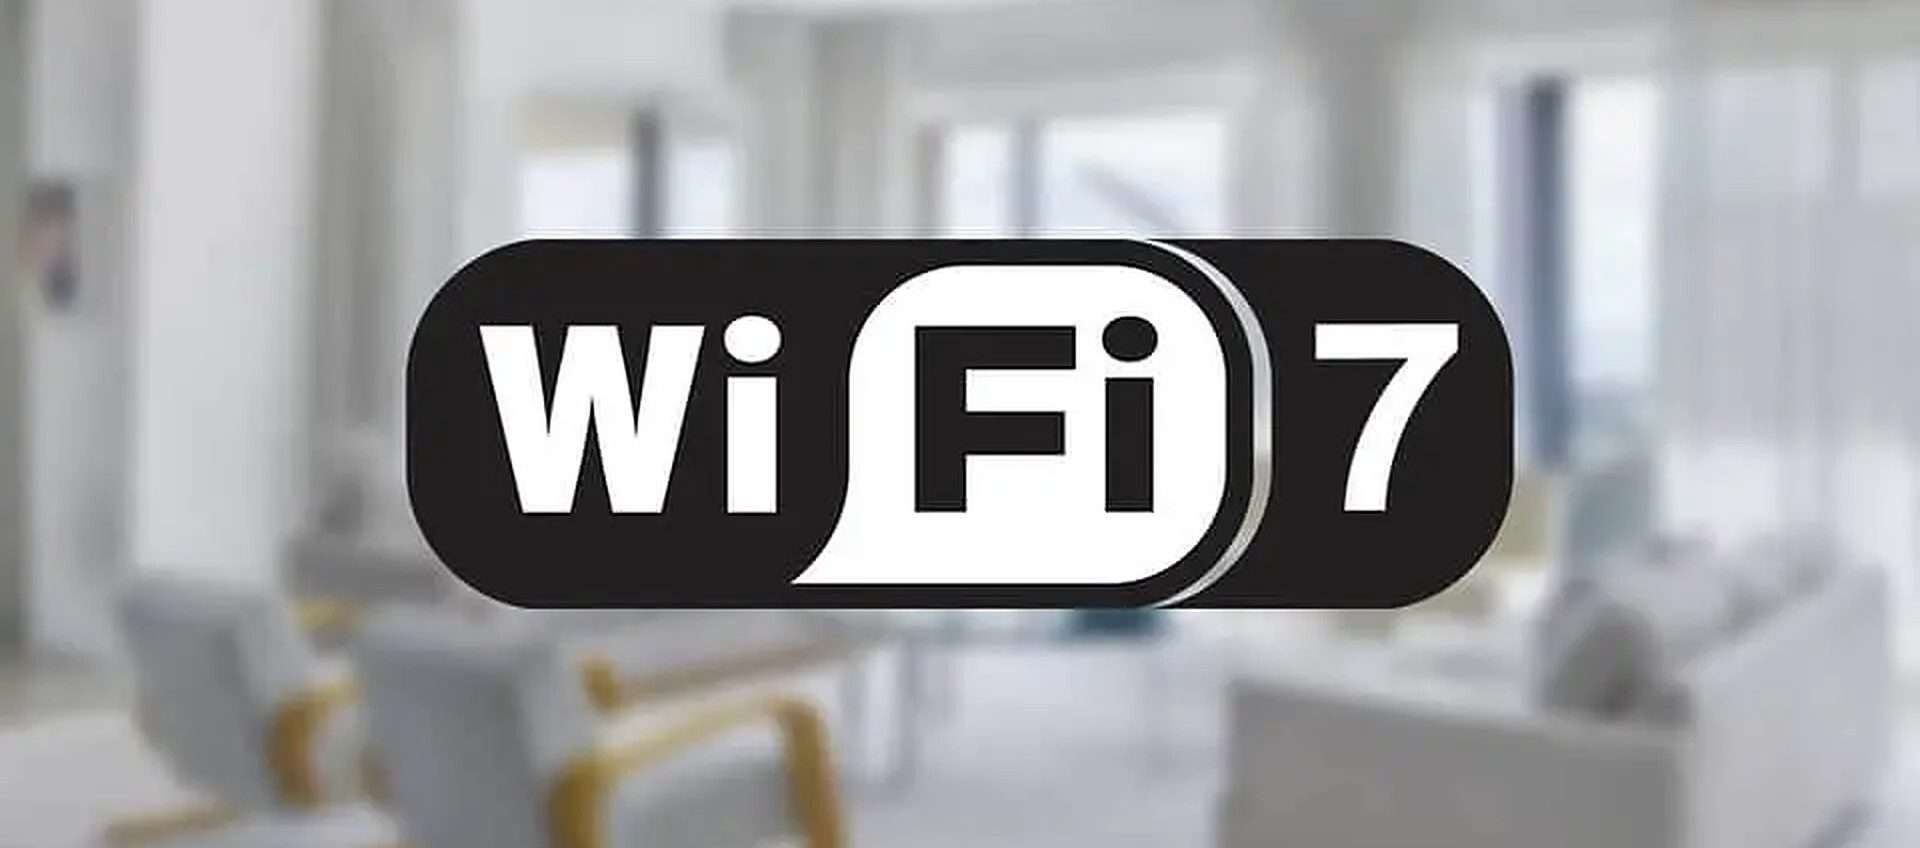 Wi-Fi 7 sta arrivando: i suoi vantaggi